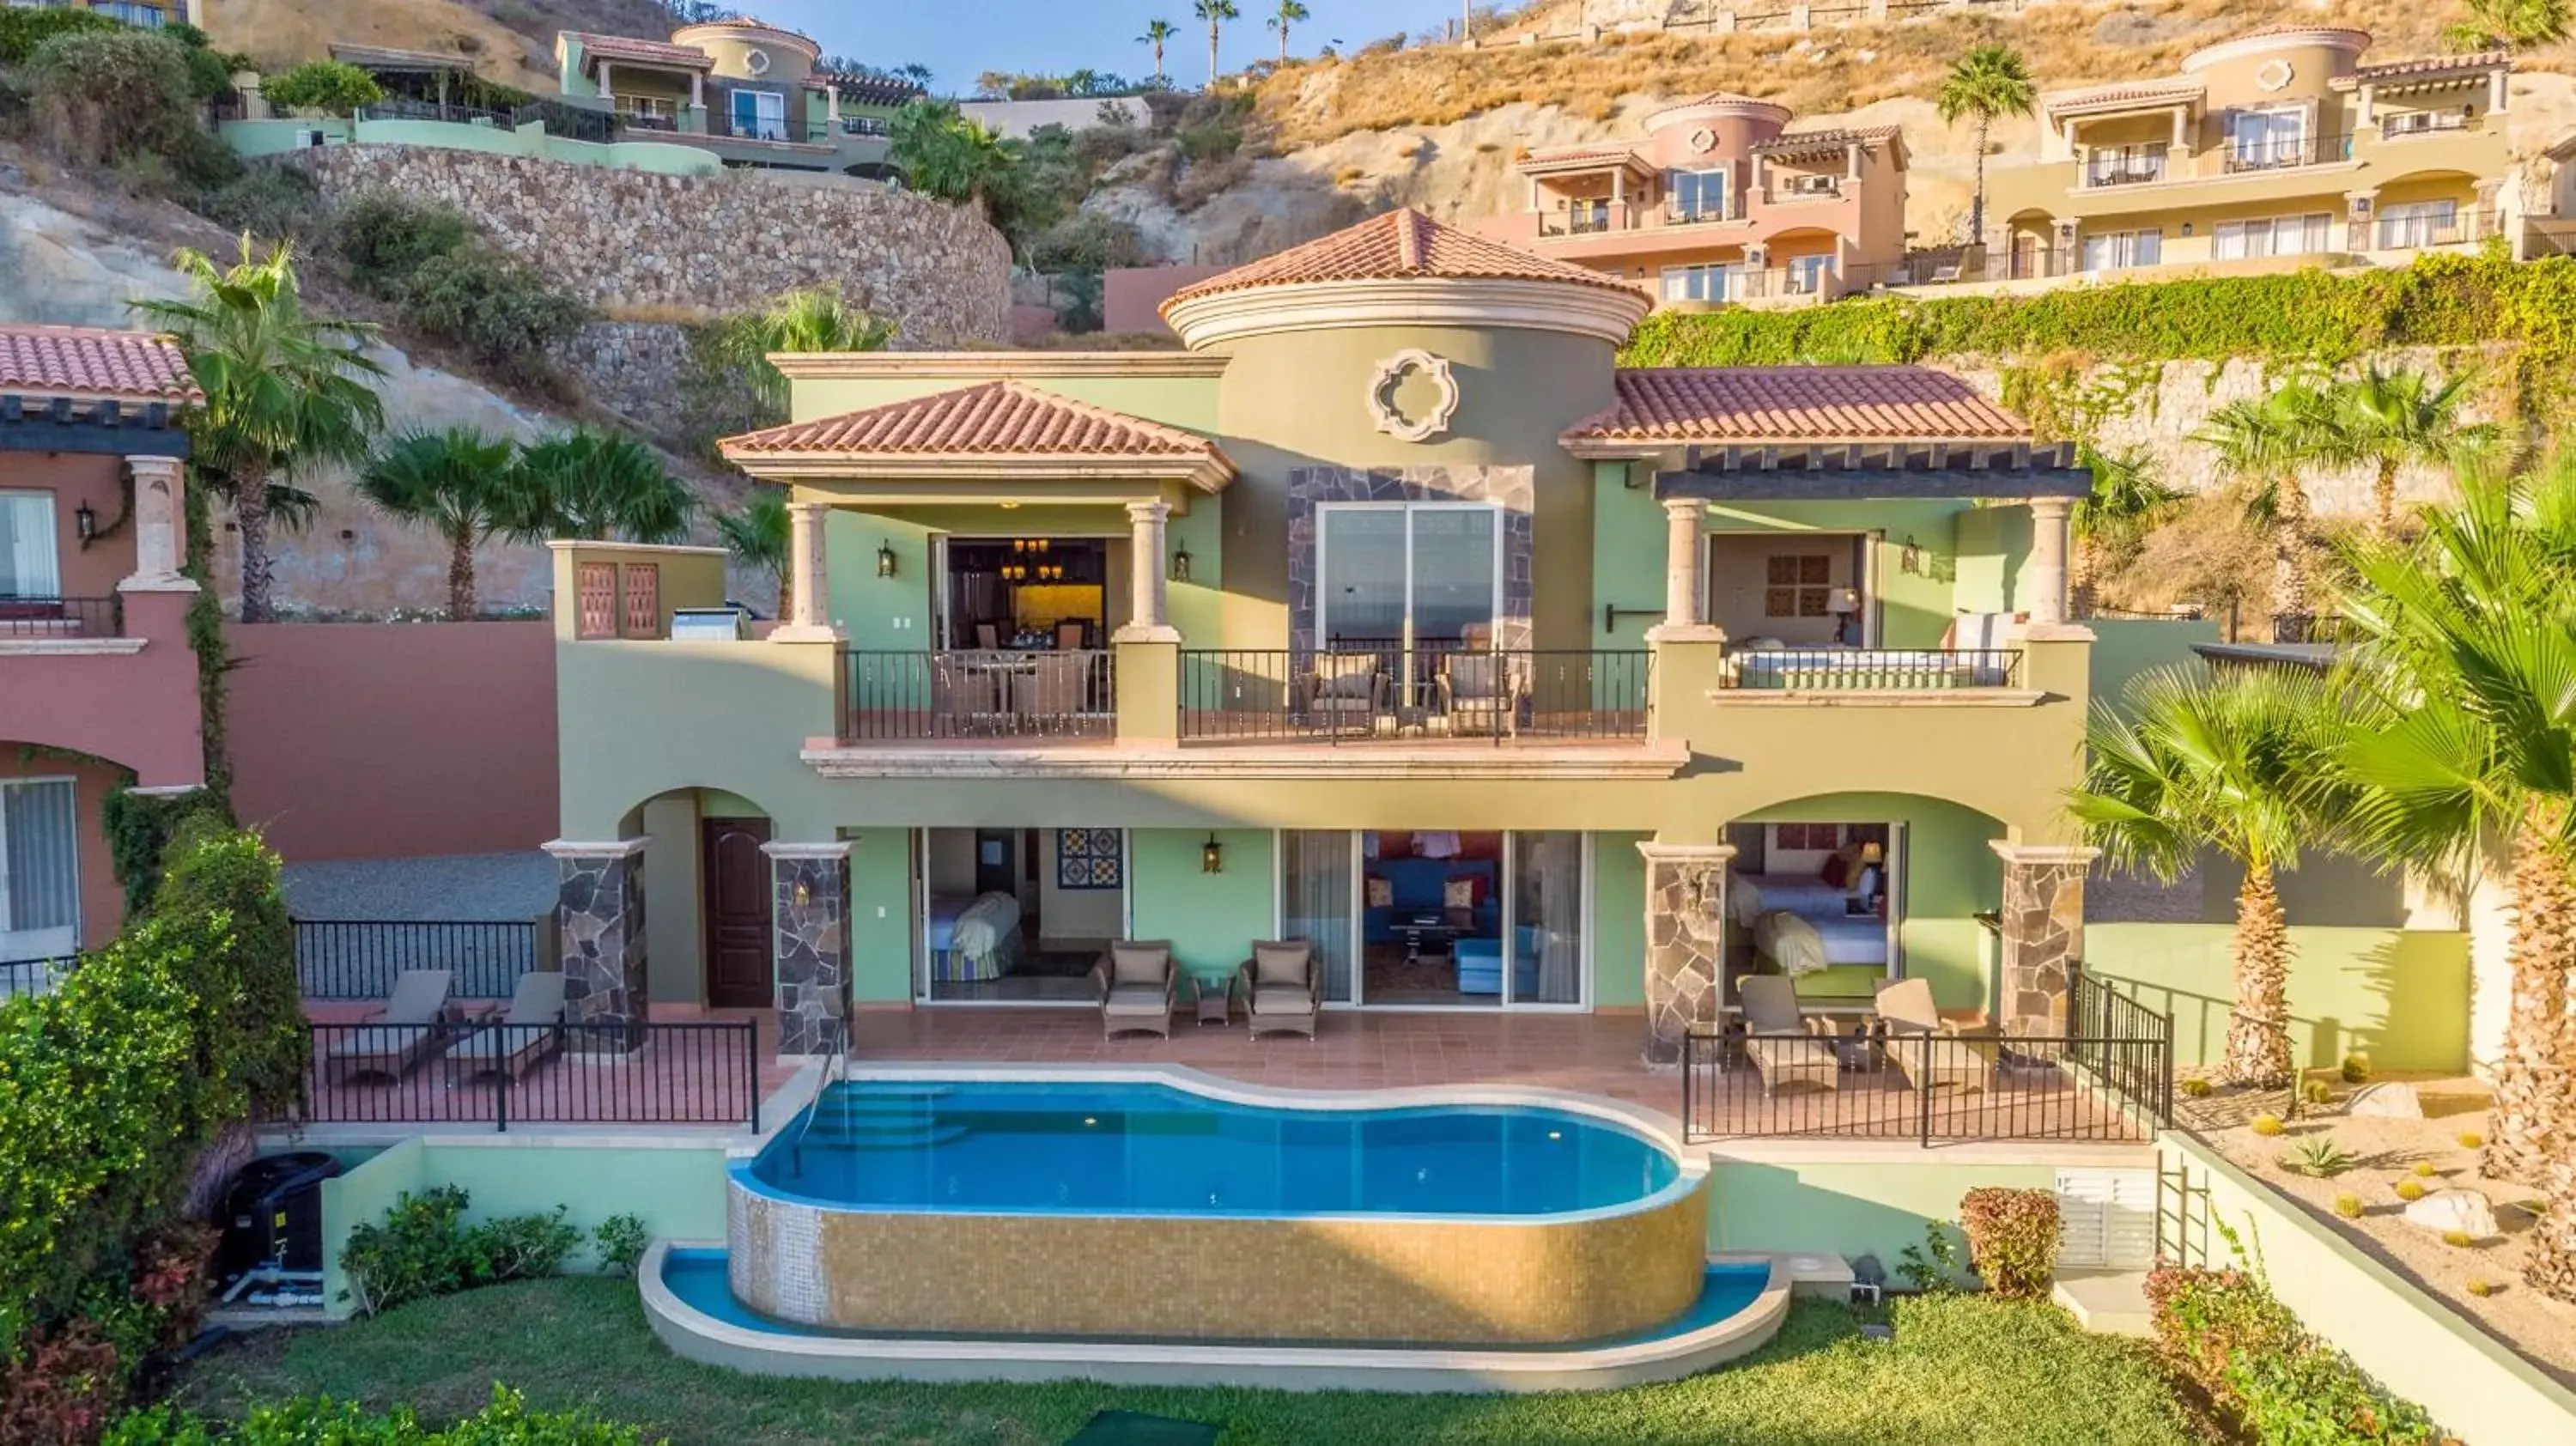 Property Building in Pueblo Bonito Montecristo Luxury Villas - All Inclusive